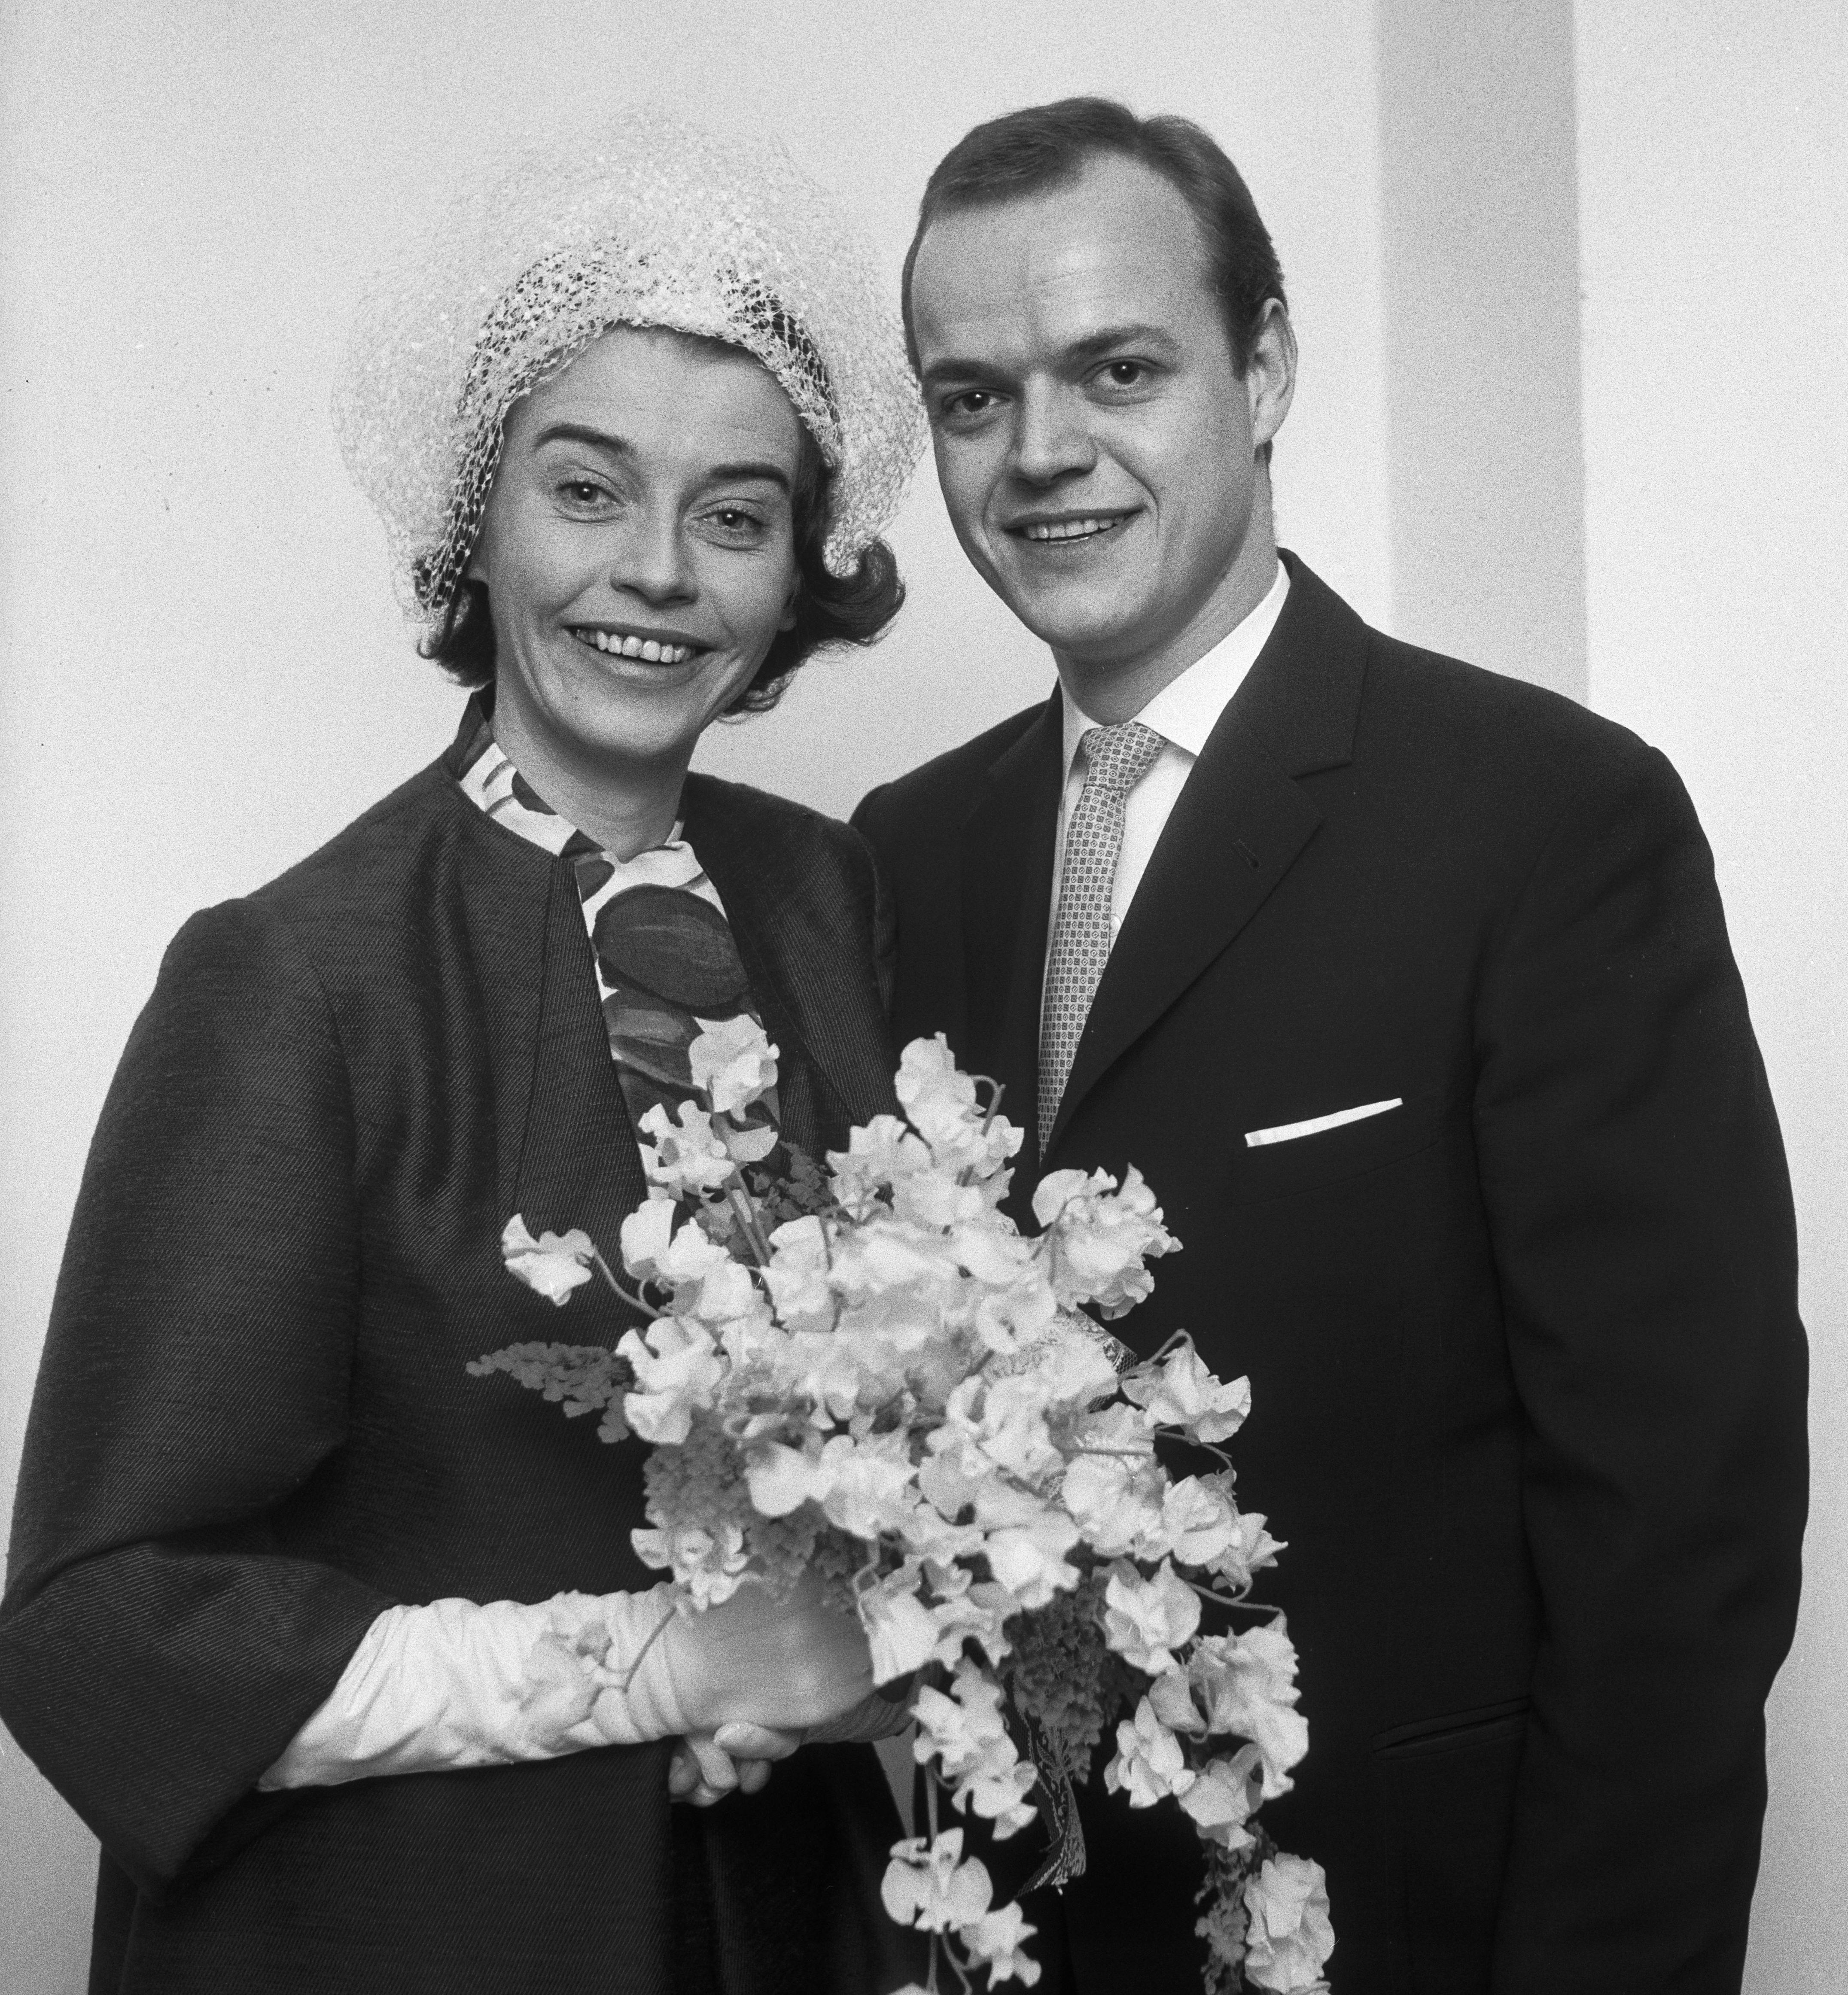 Bryllupsbillede af skuespillerparret Christa Rasmussen og Jørgen Buckhøj.